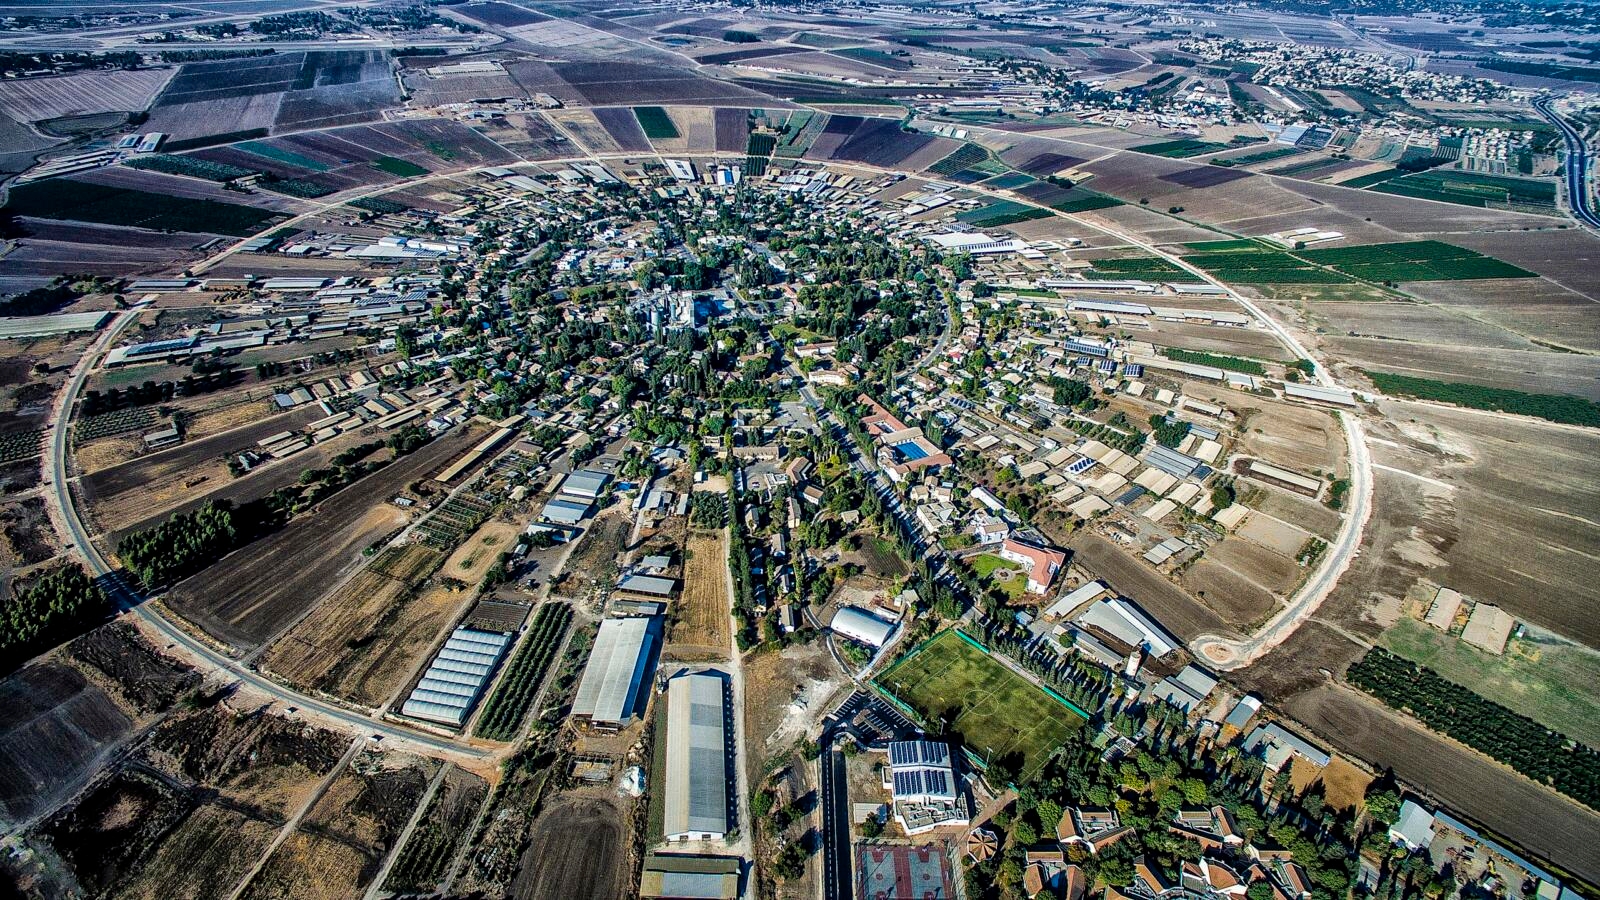 Aerial photo of farmland in Israel.